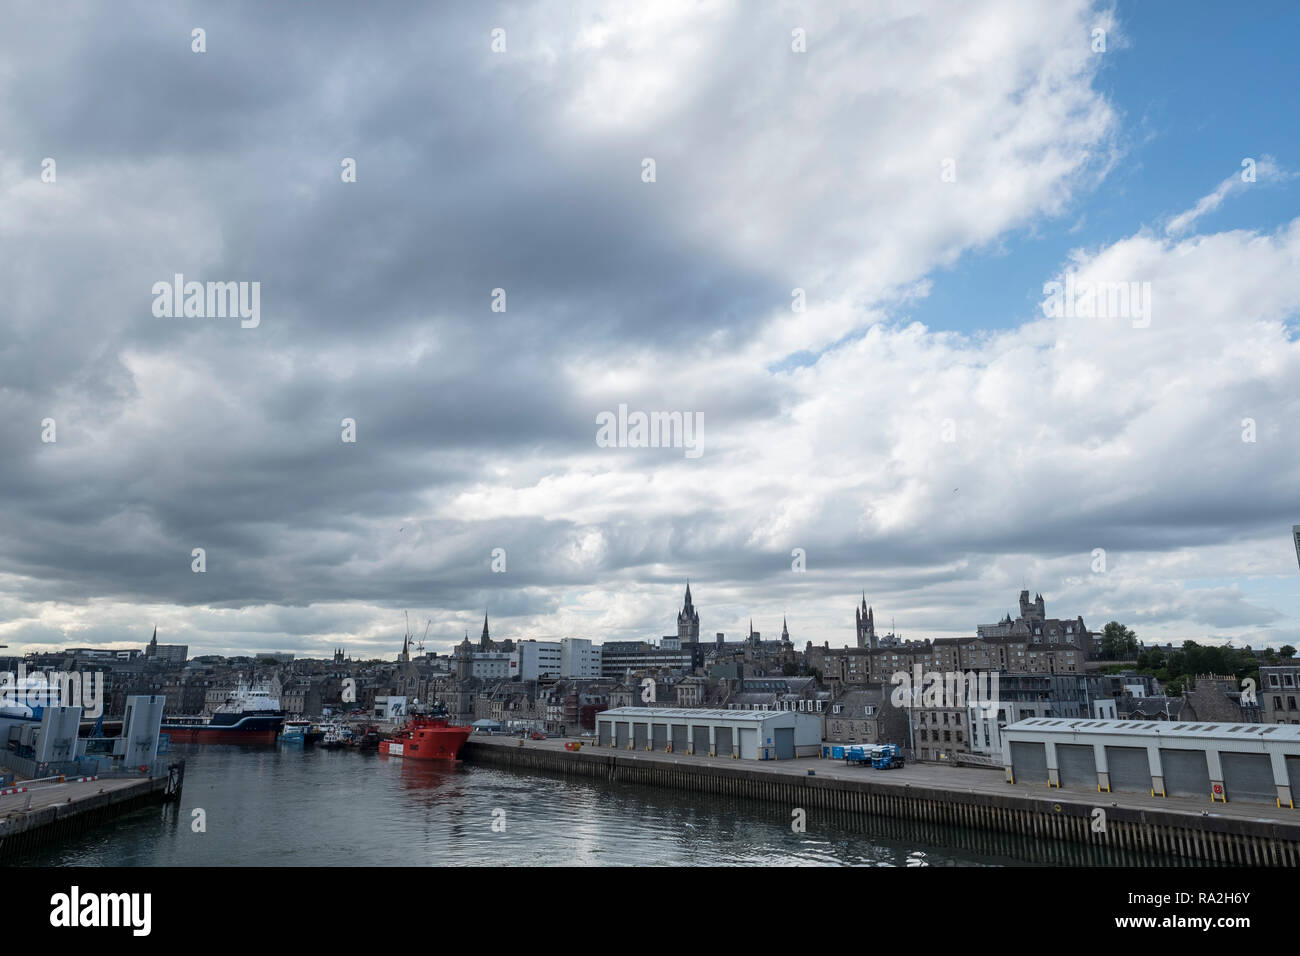 Vista panoramica del porto di Aberdeen, Scozia con navi, delle banchine e dei magazzini in un giorno nuvoloso Foto Stock